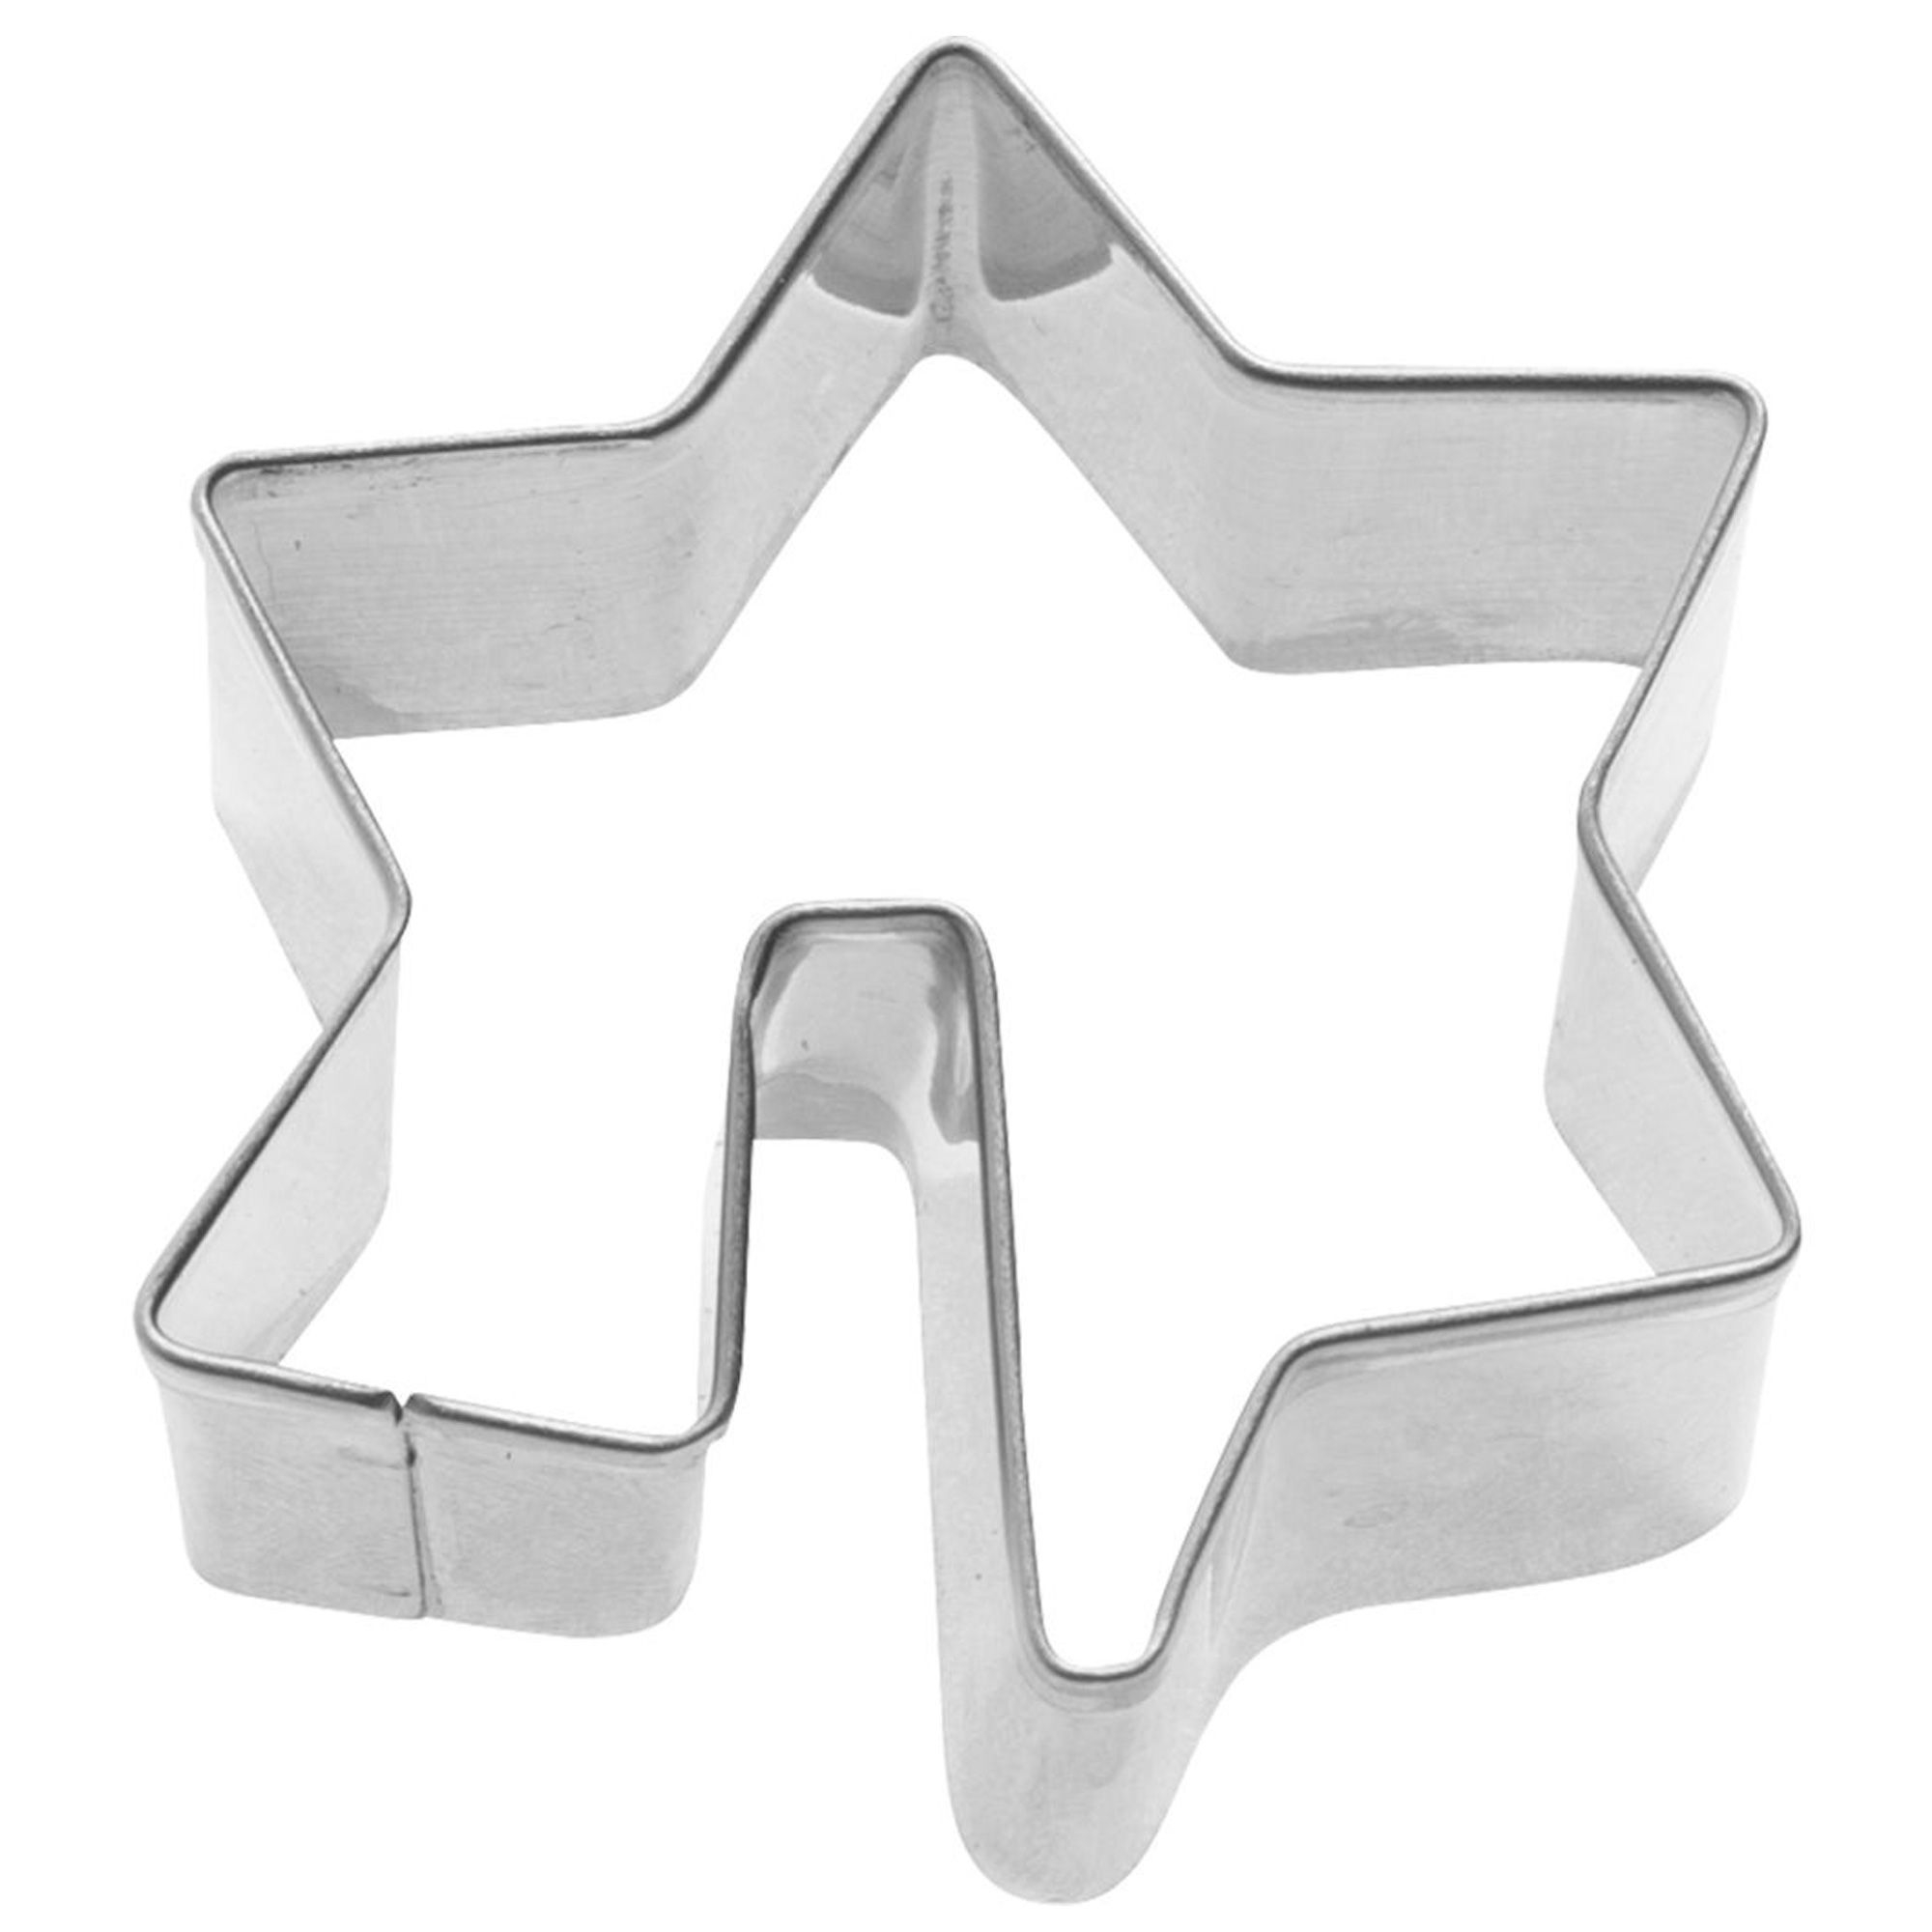 Westmark - Tassenkeks-Ausstechform »Stern«, 5 cm, lose mit EAN